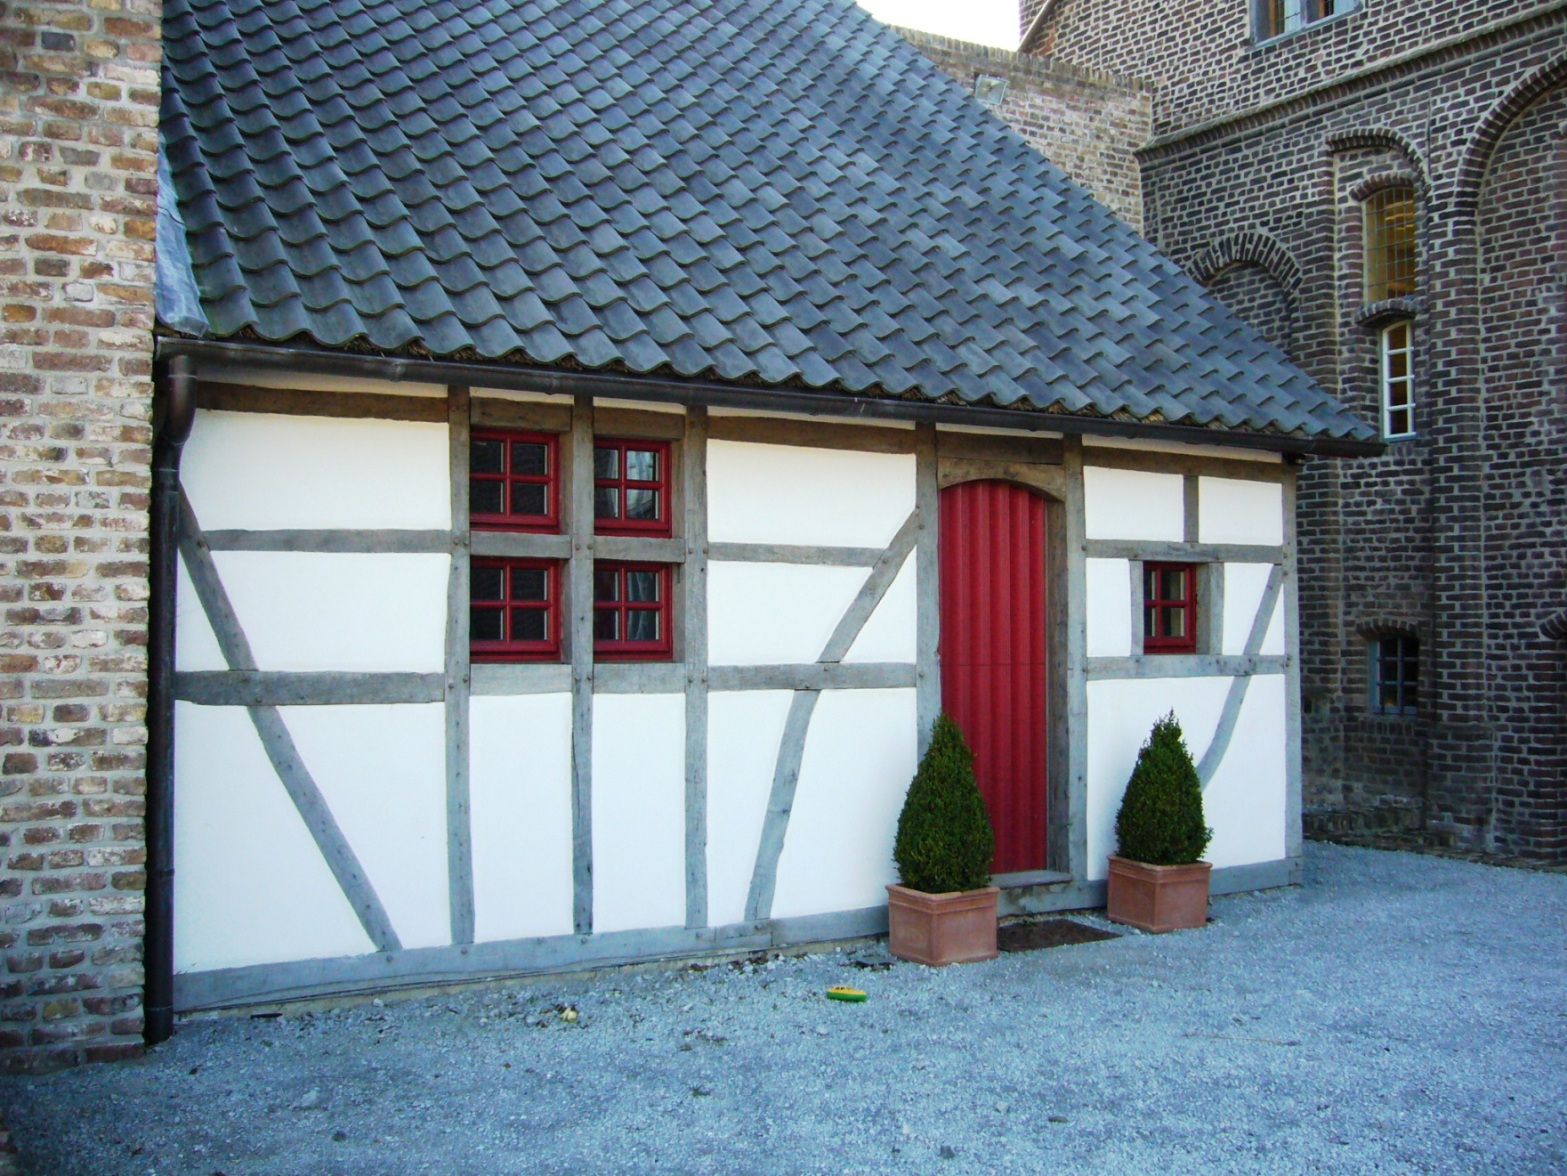 Fachwerkhaus mit Sprossenfenster nach historischen Vorbildern